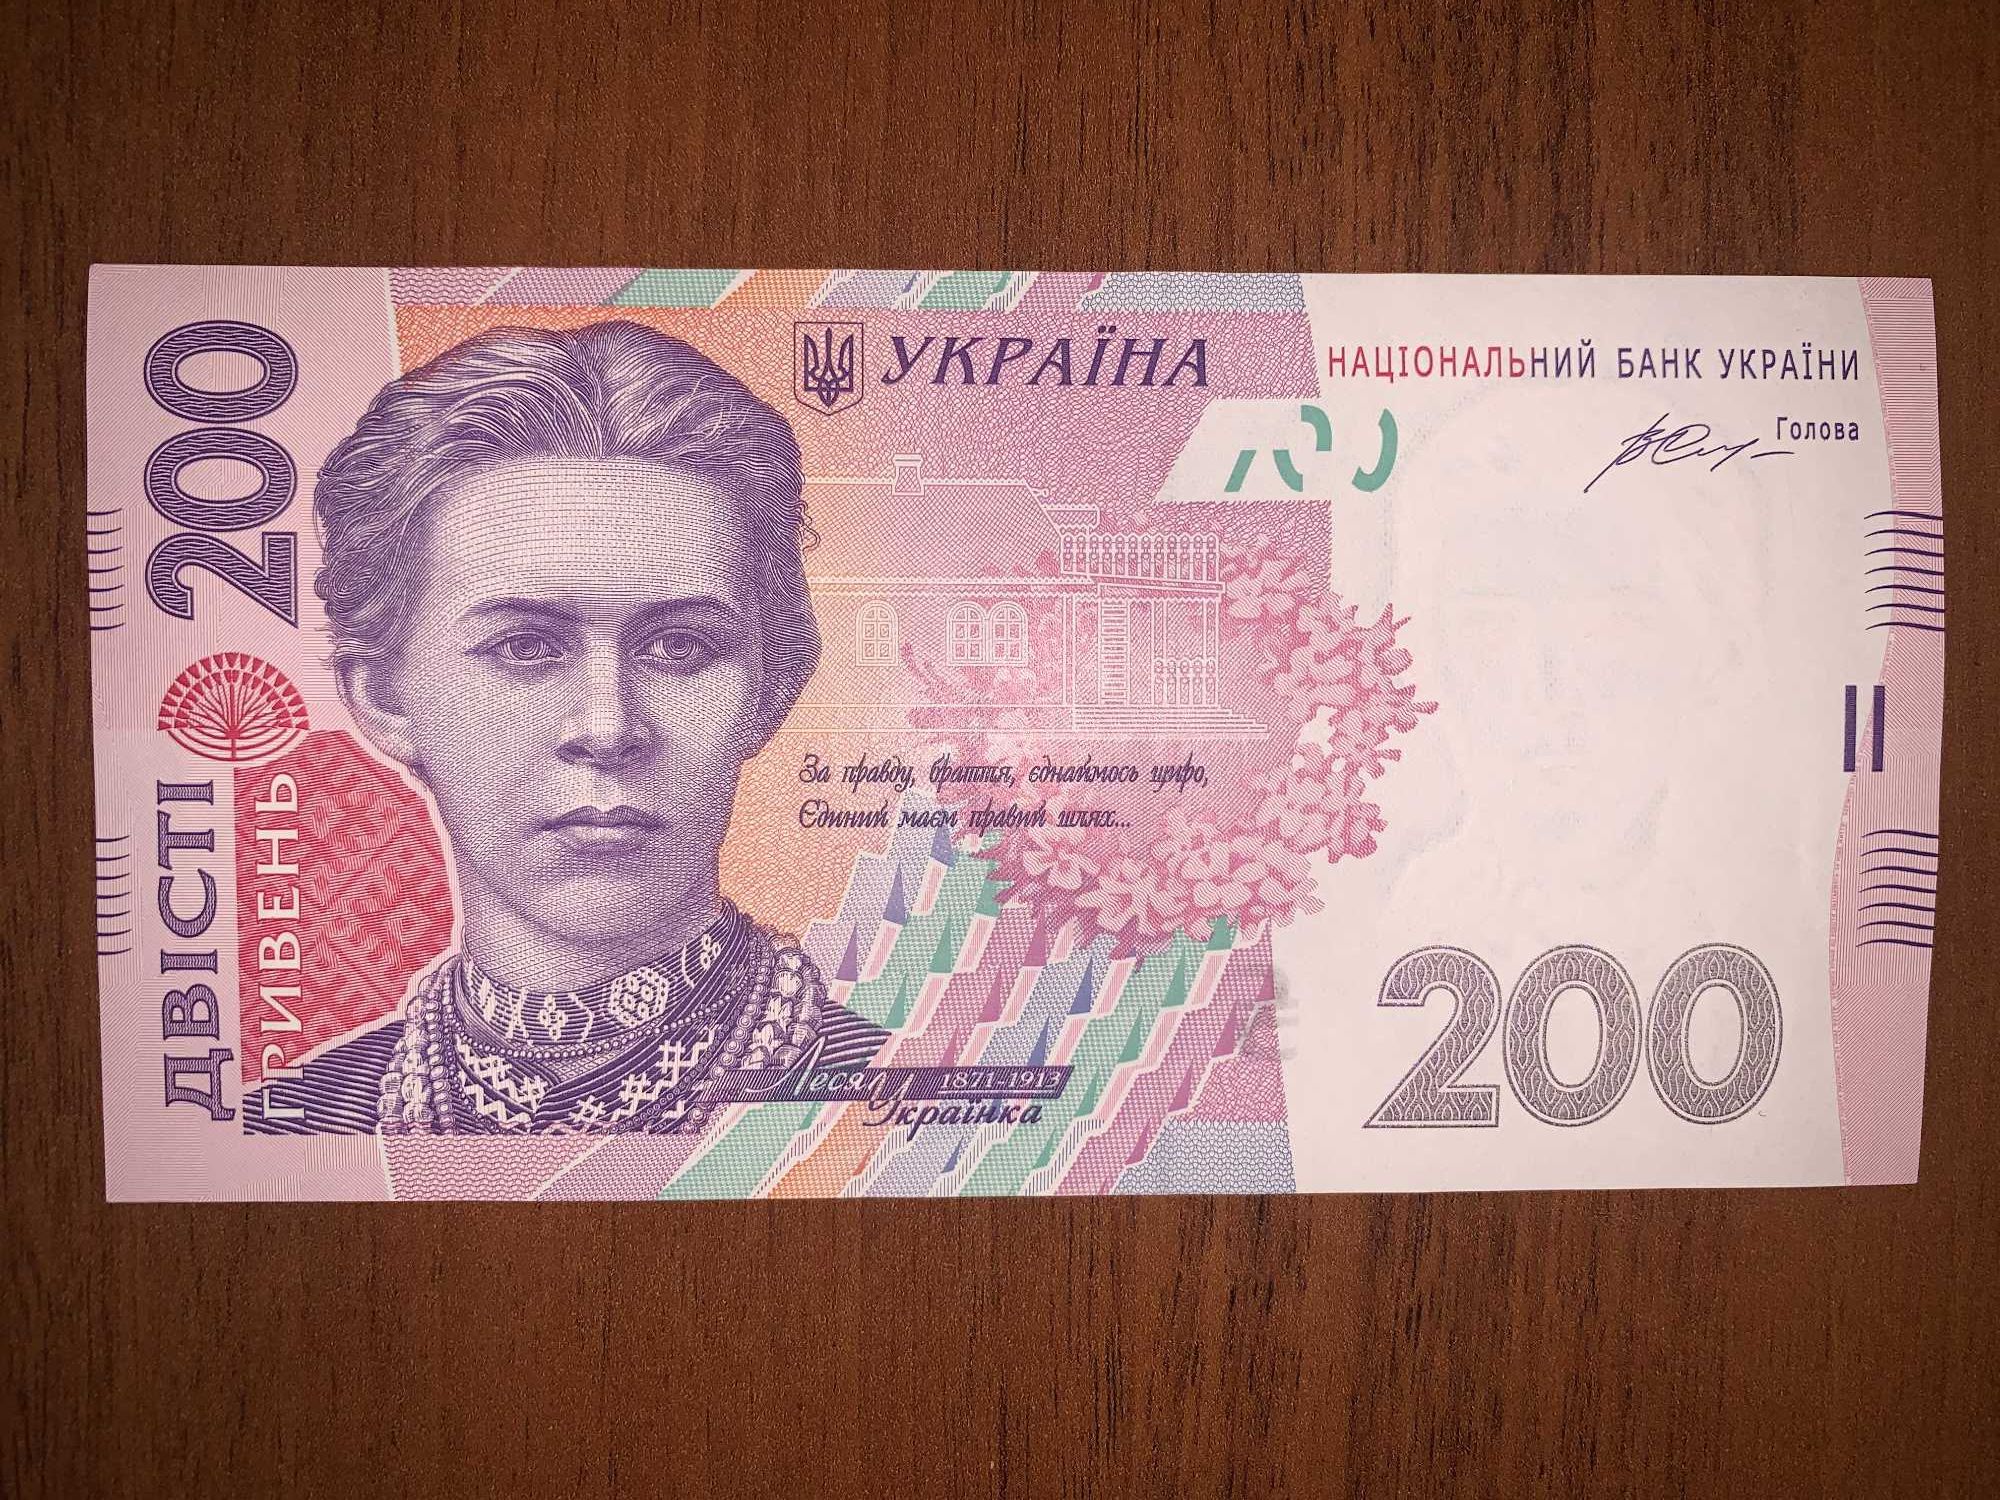 Купюра 200 грн 2014 р. Гонтарева ( нова )